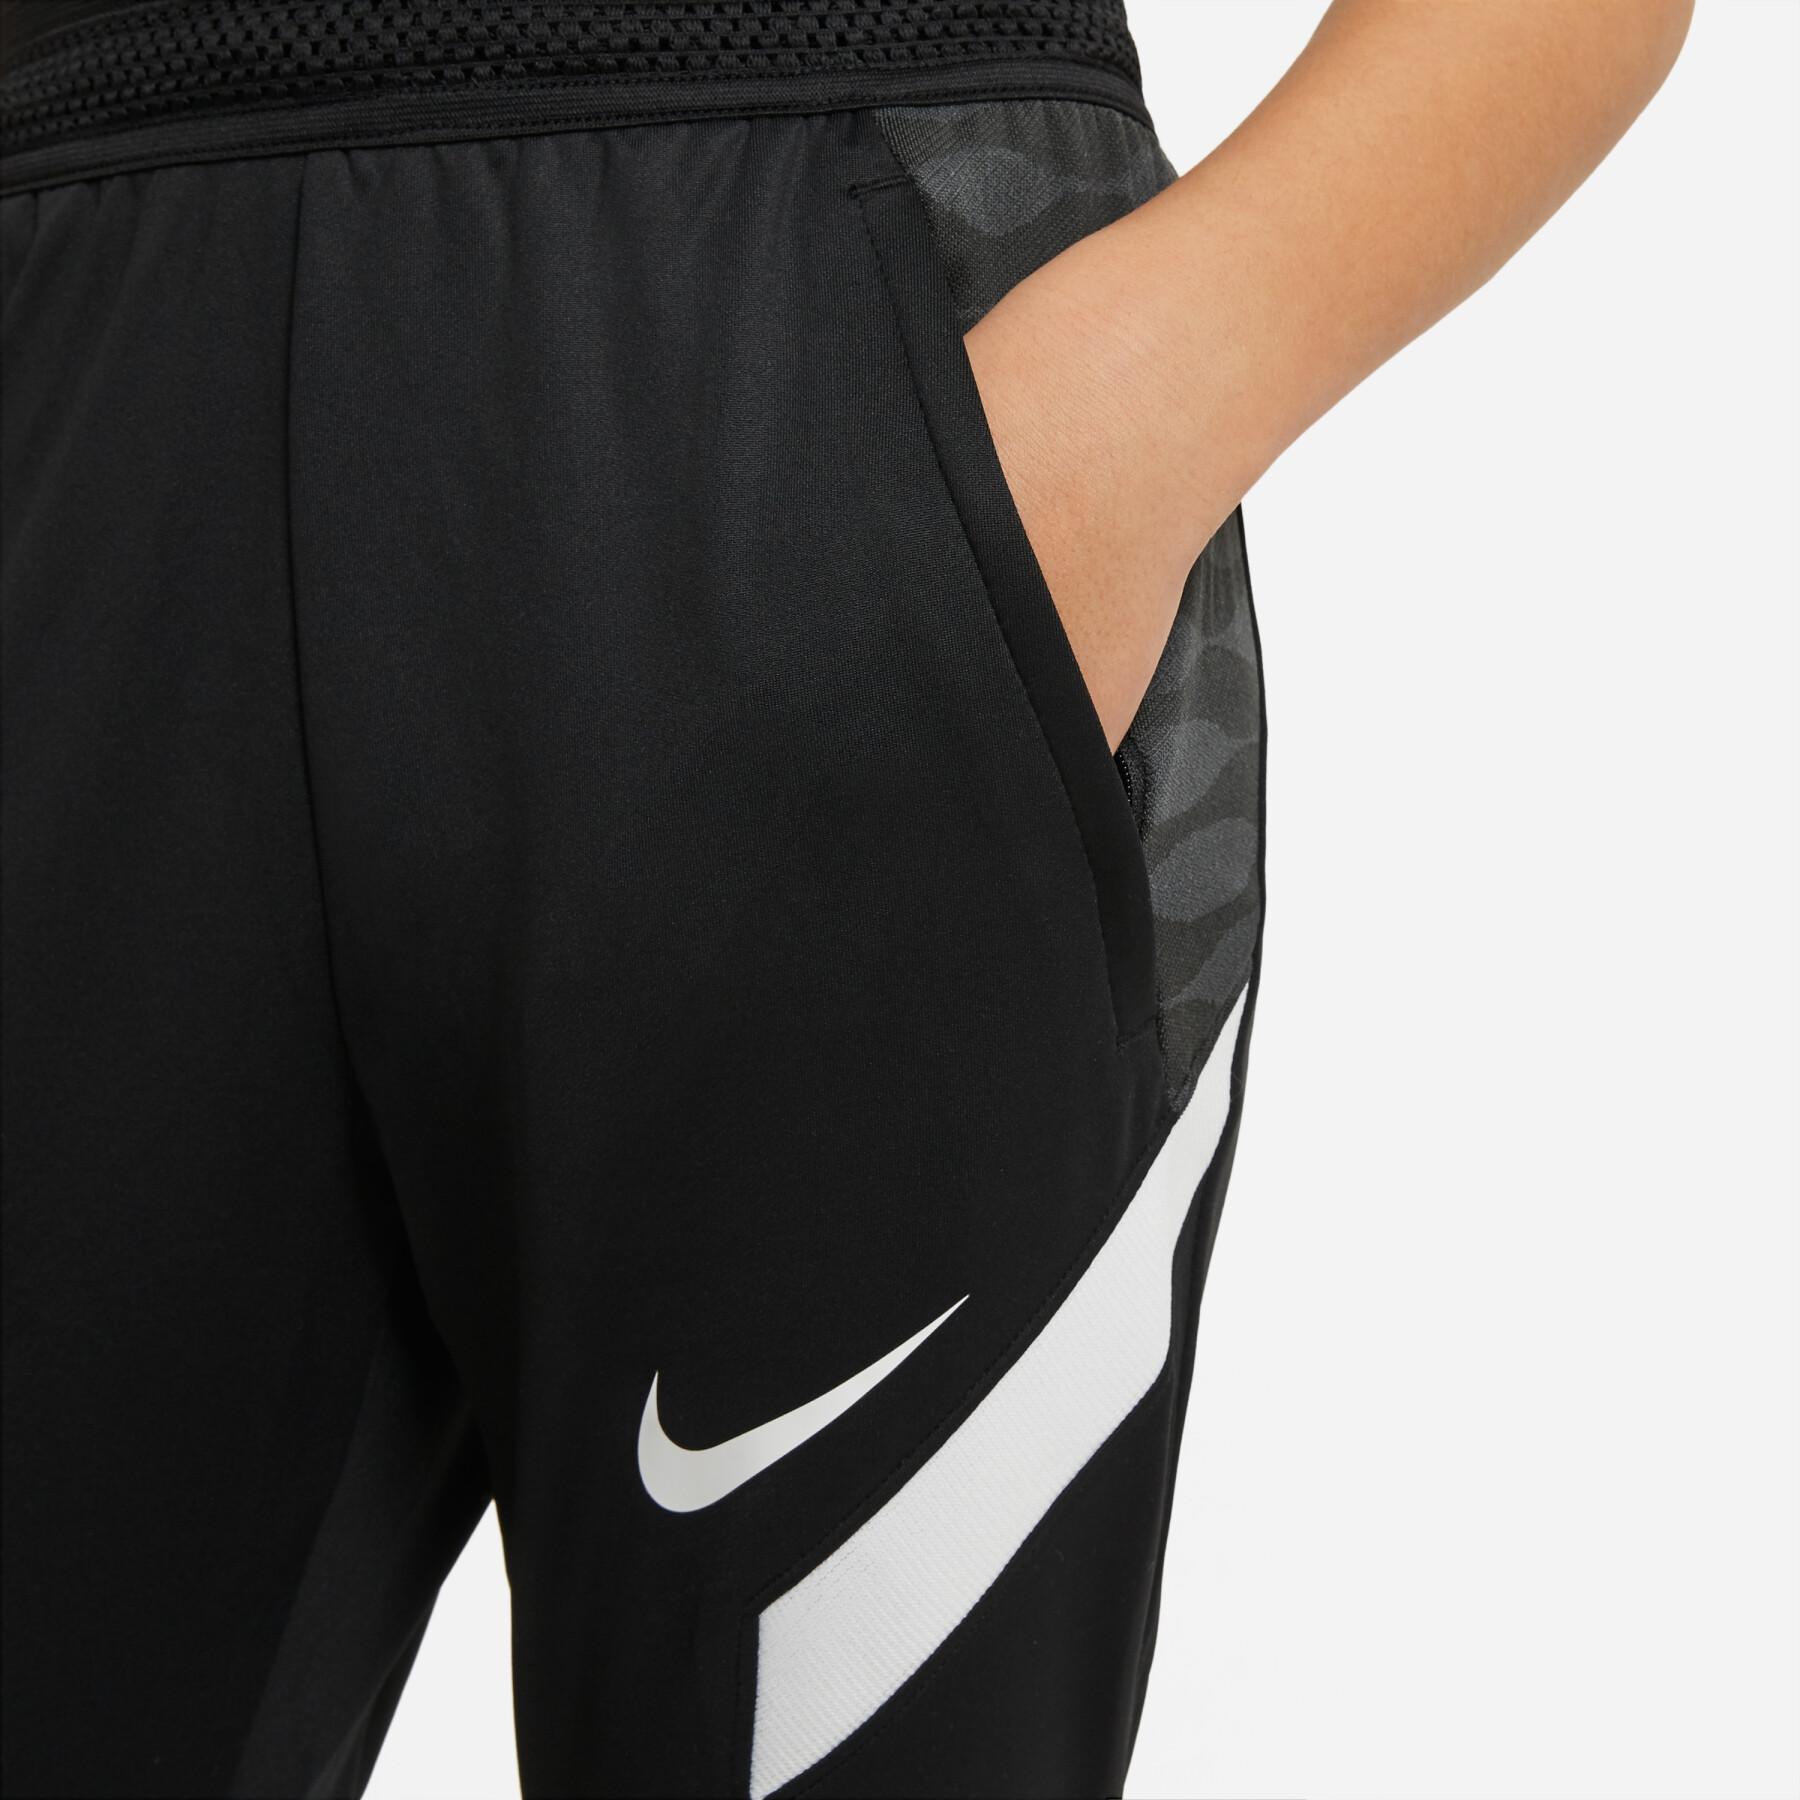 Pantalon enfant Nike Dynamic Fit StrikeE21